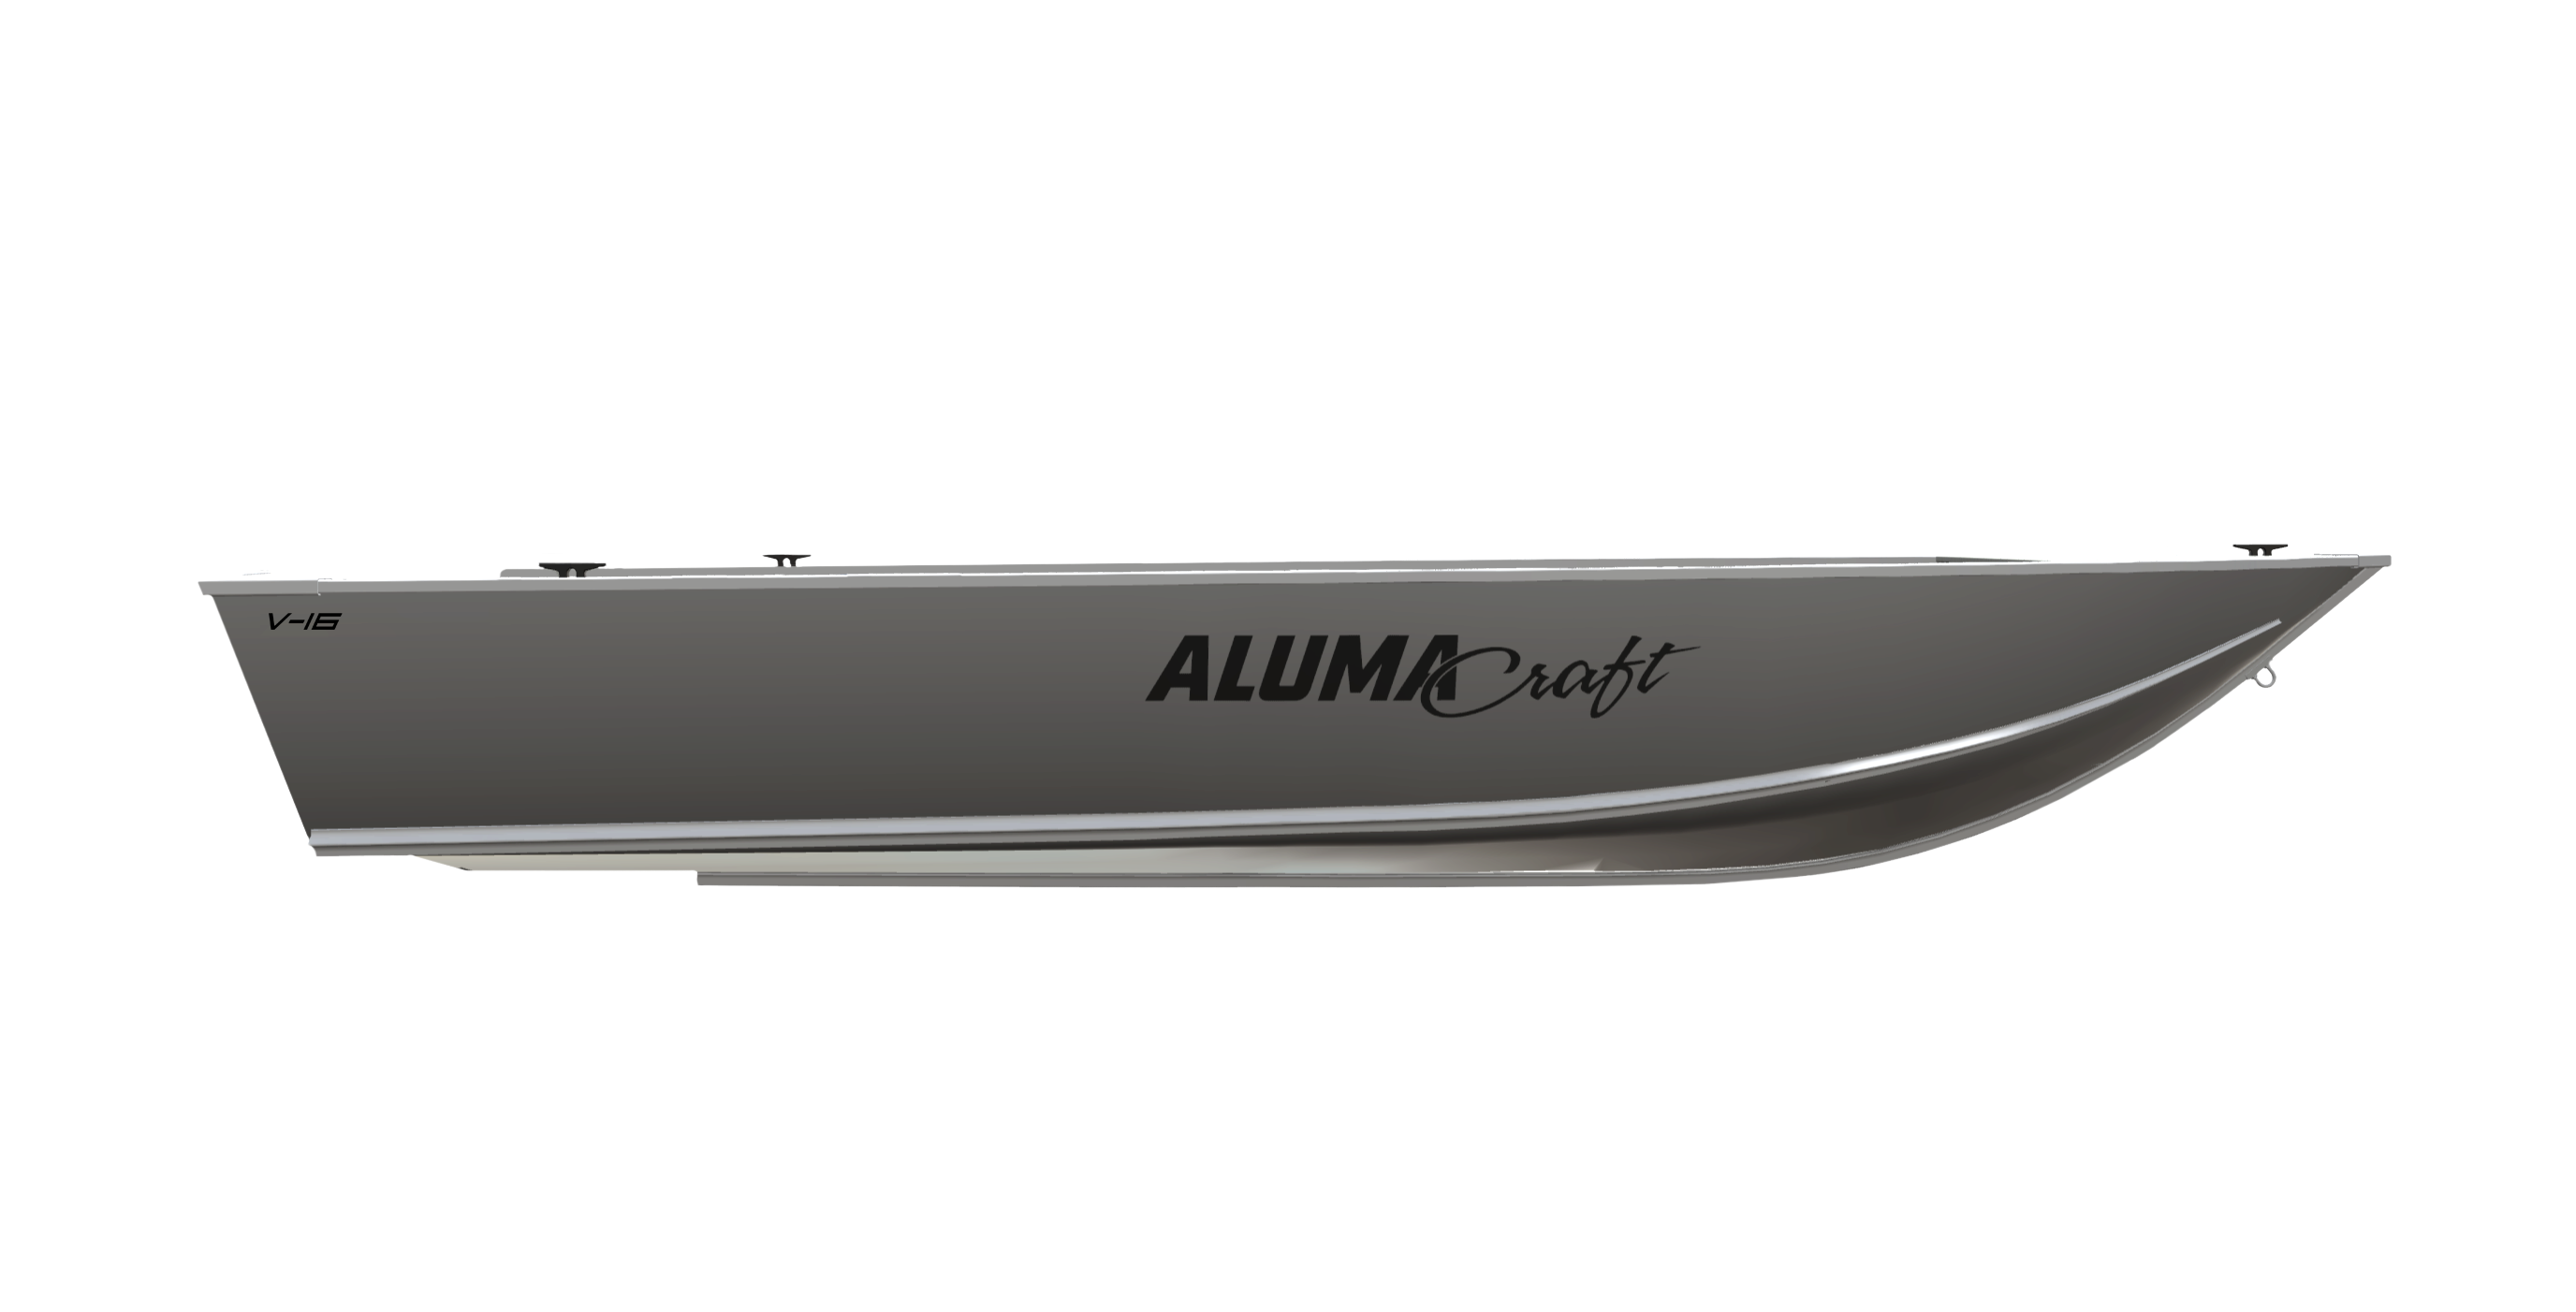 Toyota Tundra & Alumacraft Boat